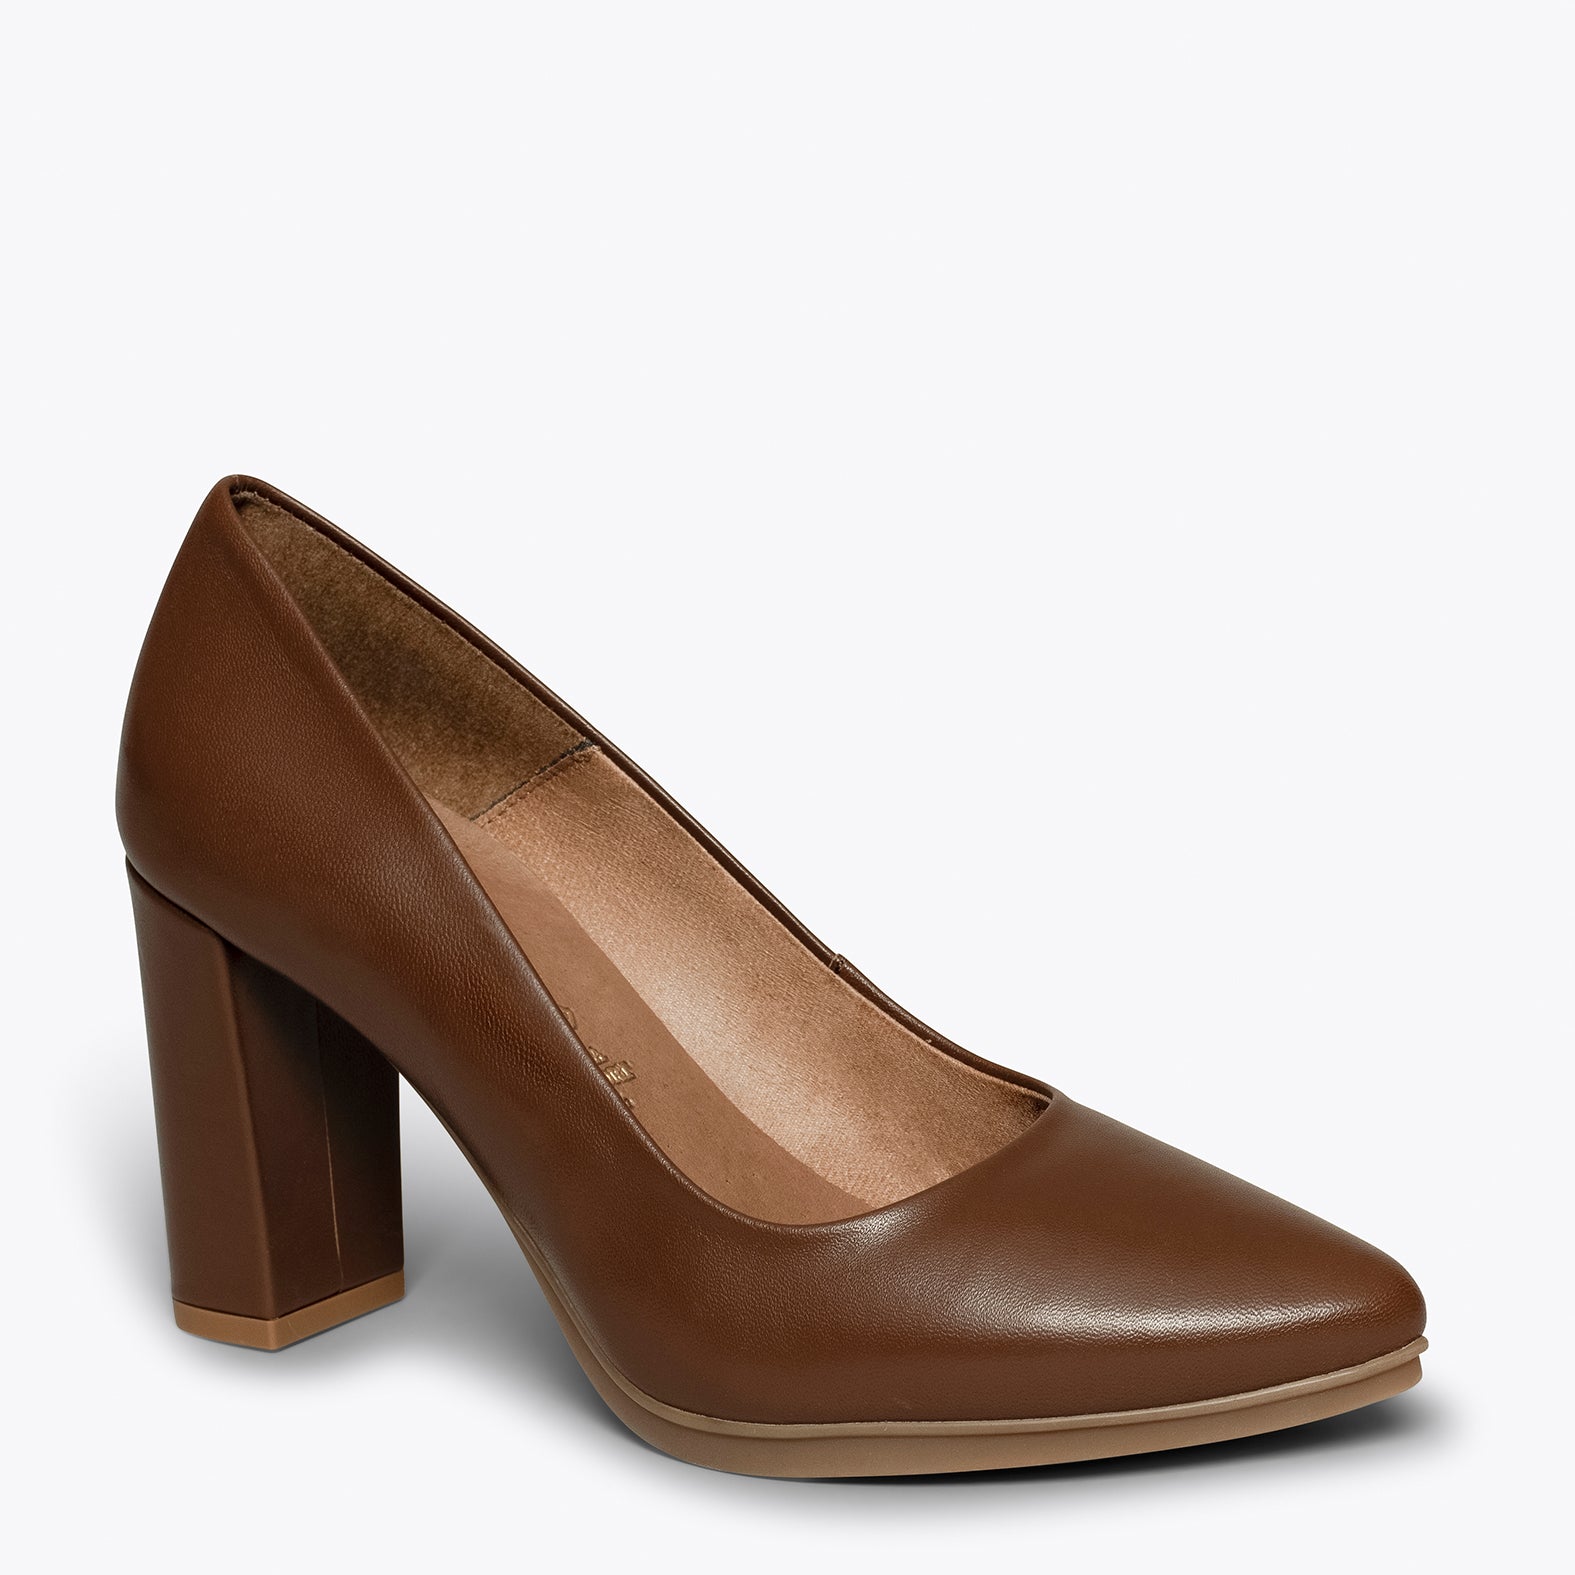 URBAN SALON – BROWN nappa leather high heel